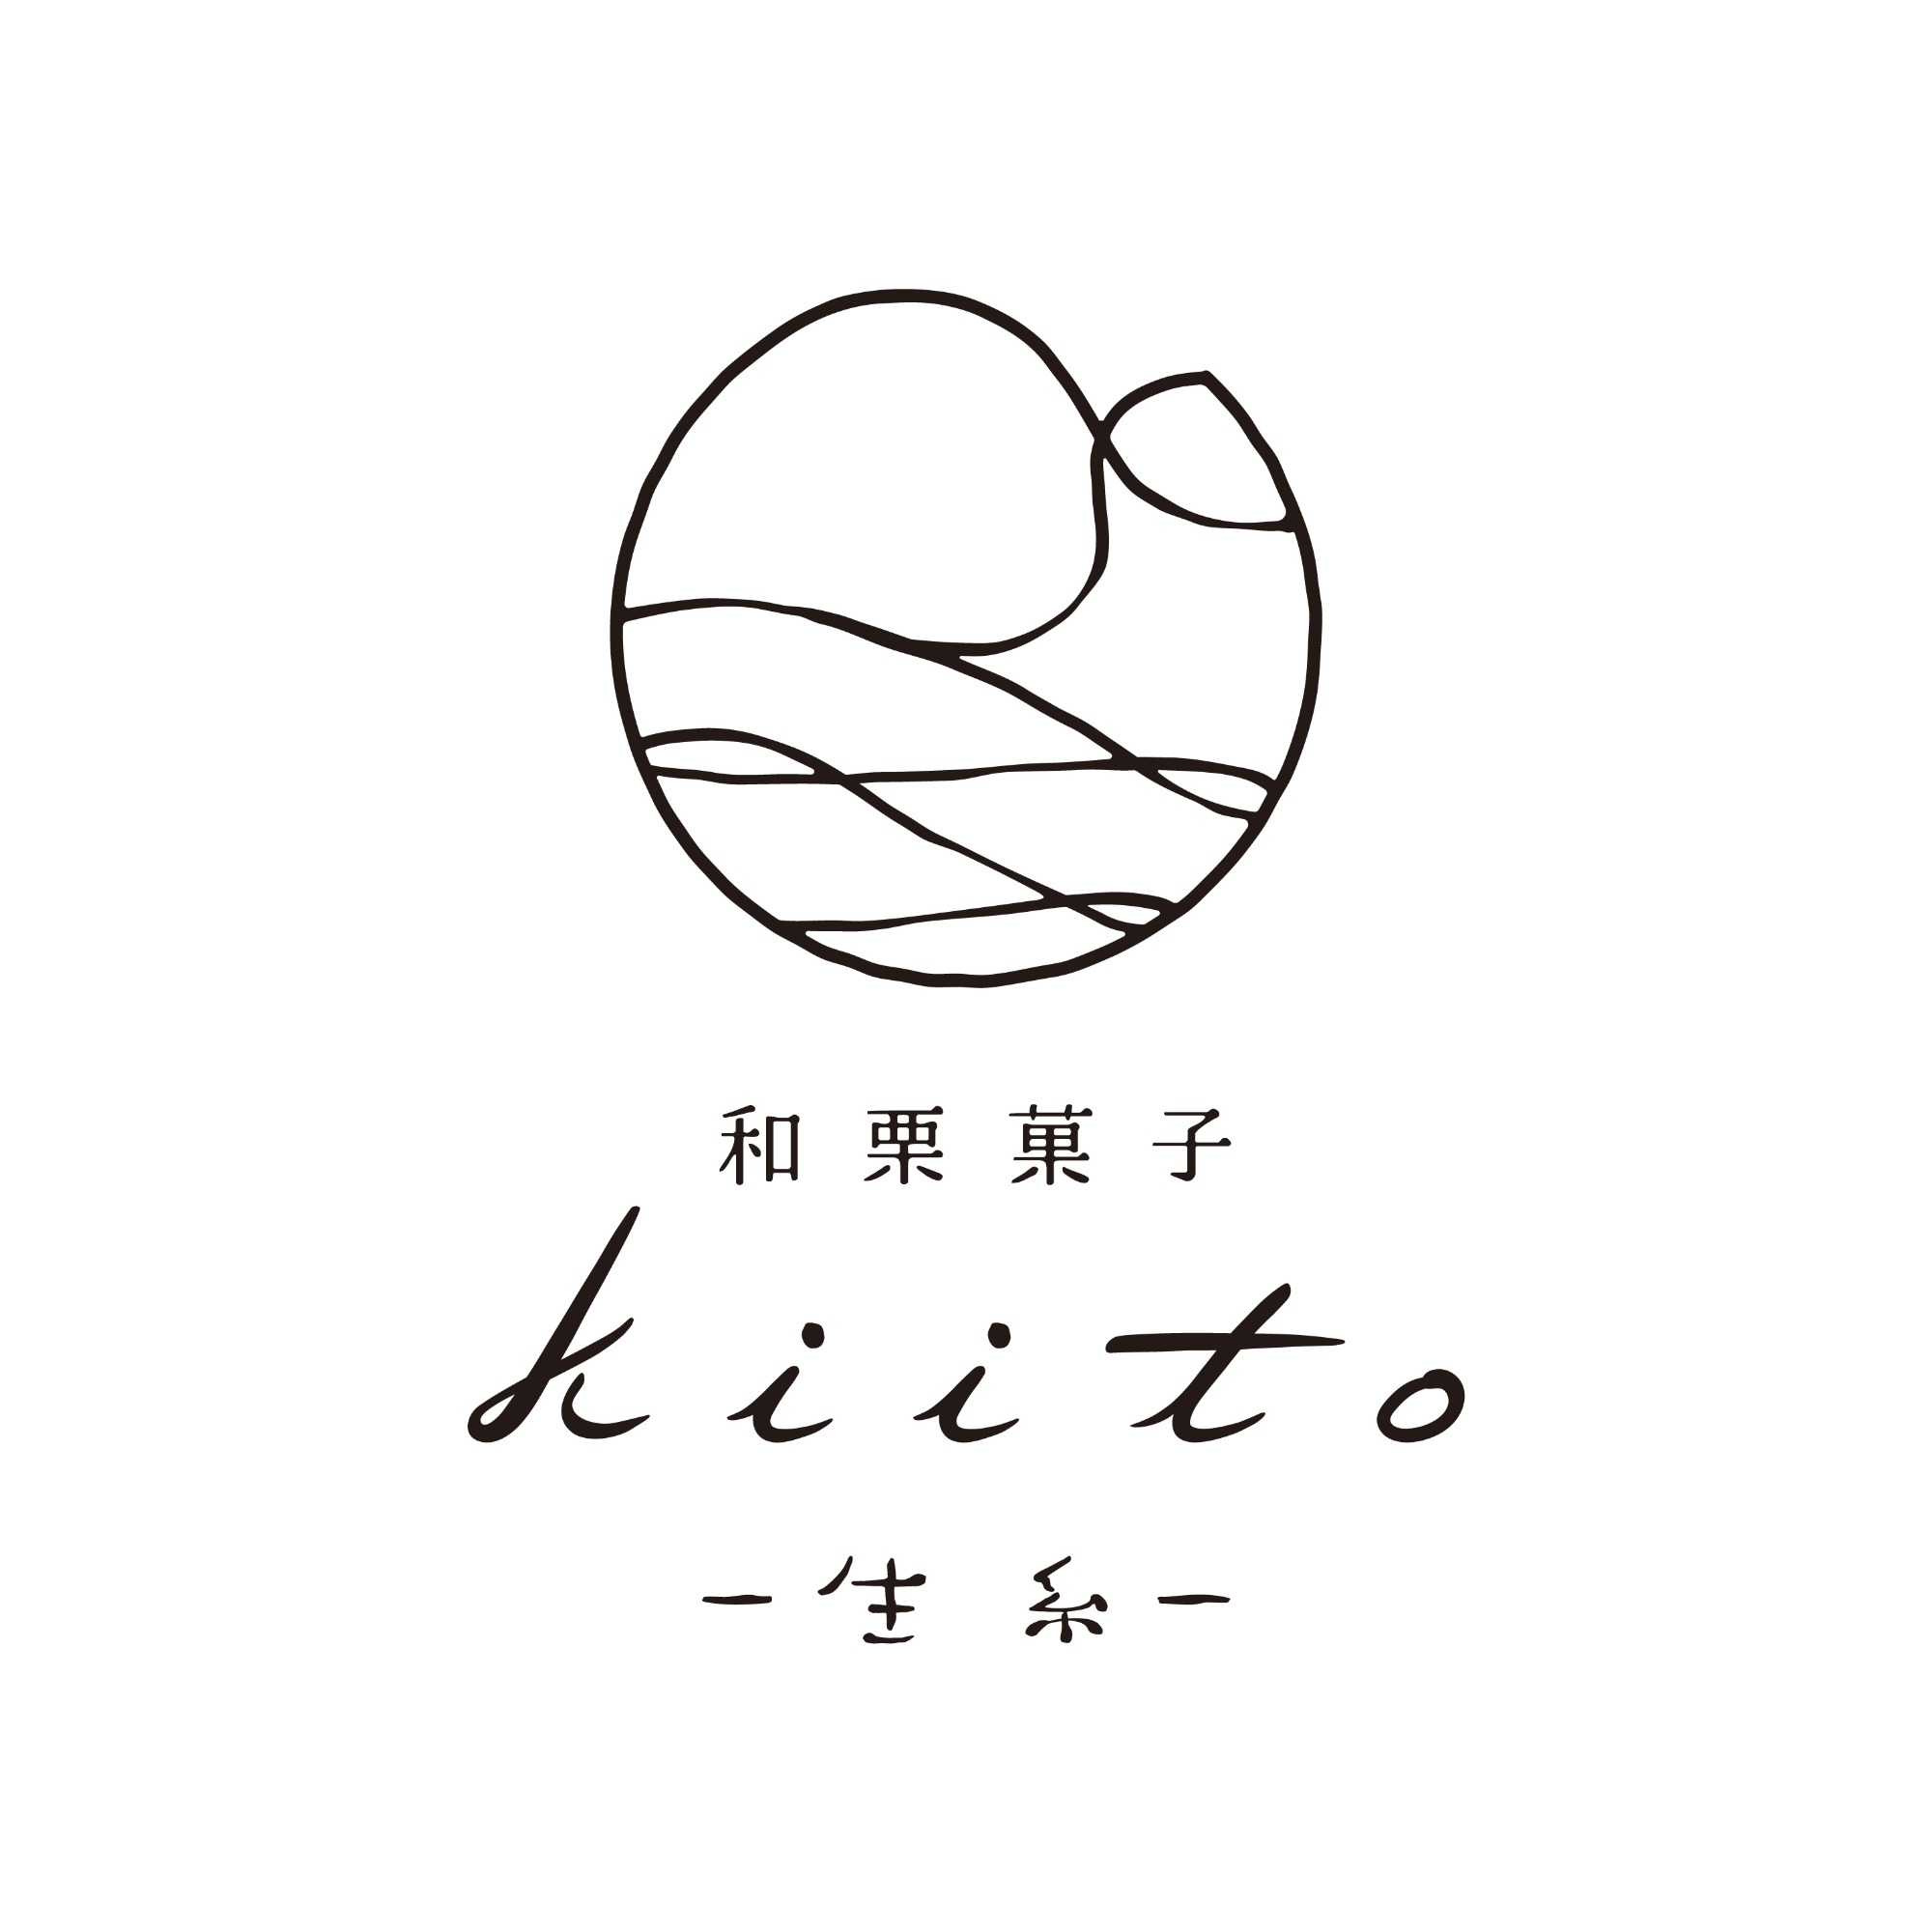 和栗菓子 kiito-生糸-